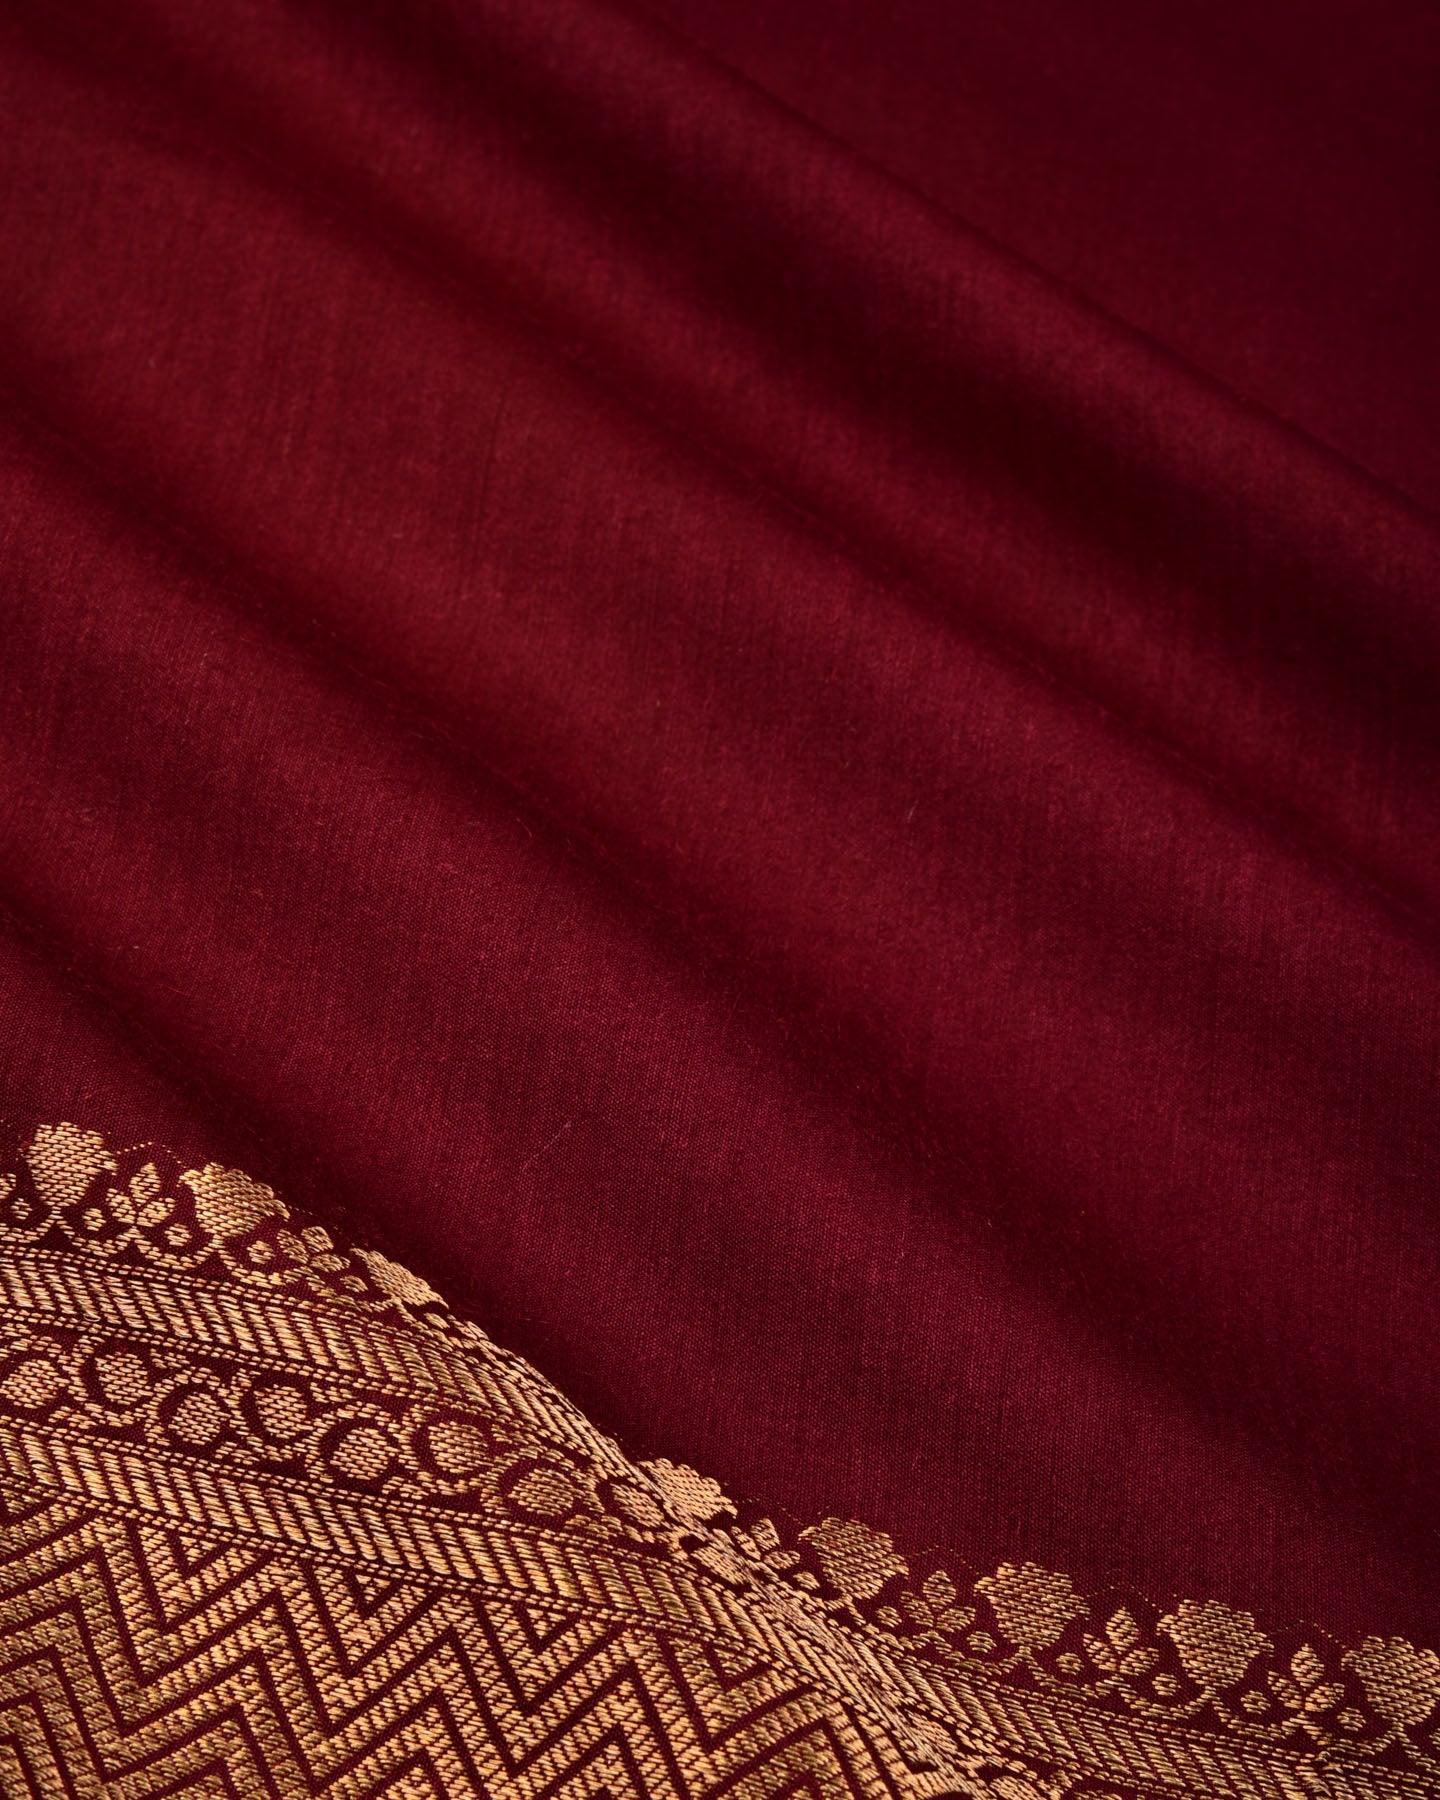 Mahogany Banarasi Brocade Woven Muga Silk Saree - By HolyWeaves, Benares